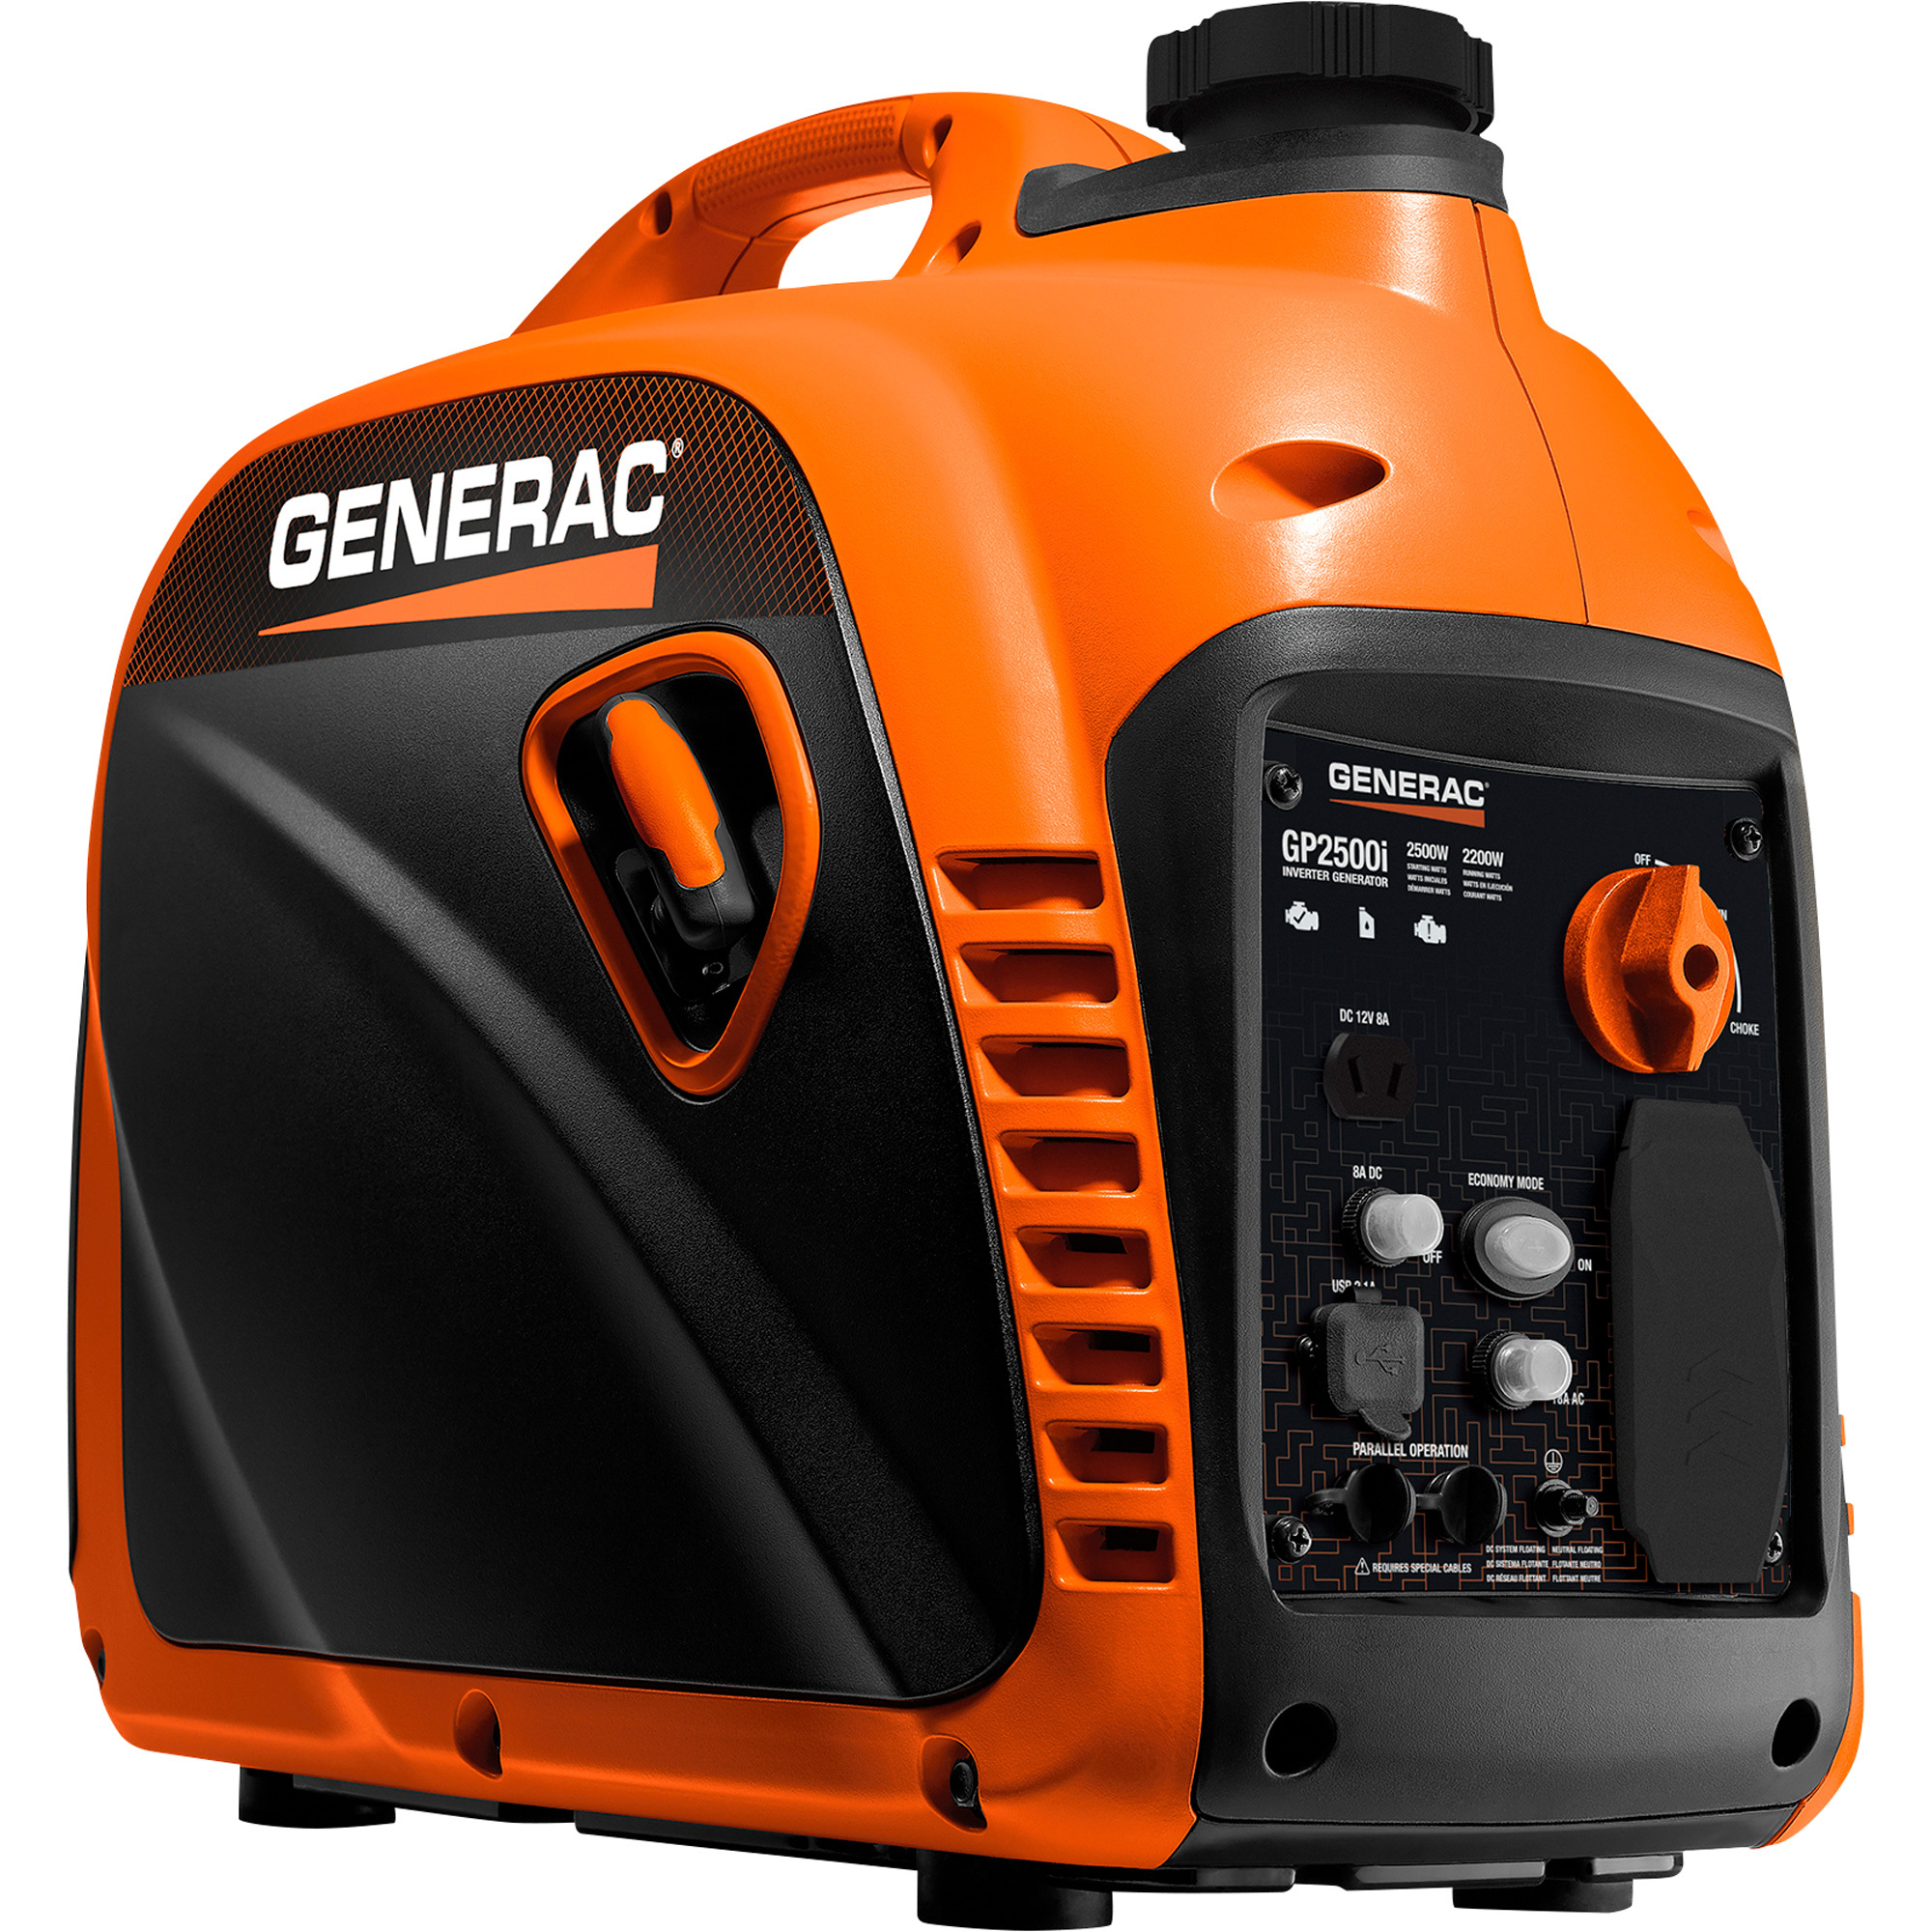 Generac Inverter Generator 2500 Surge Watts